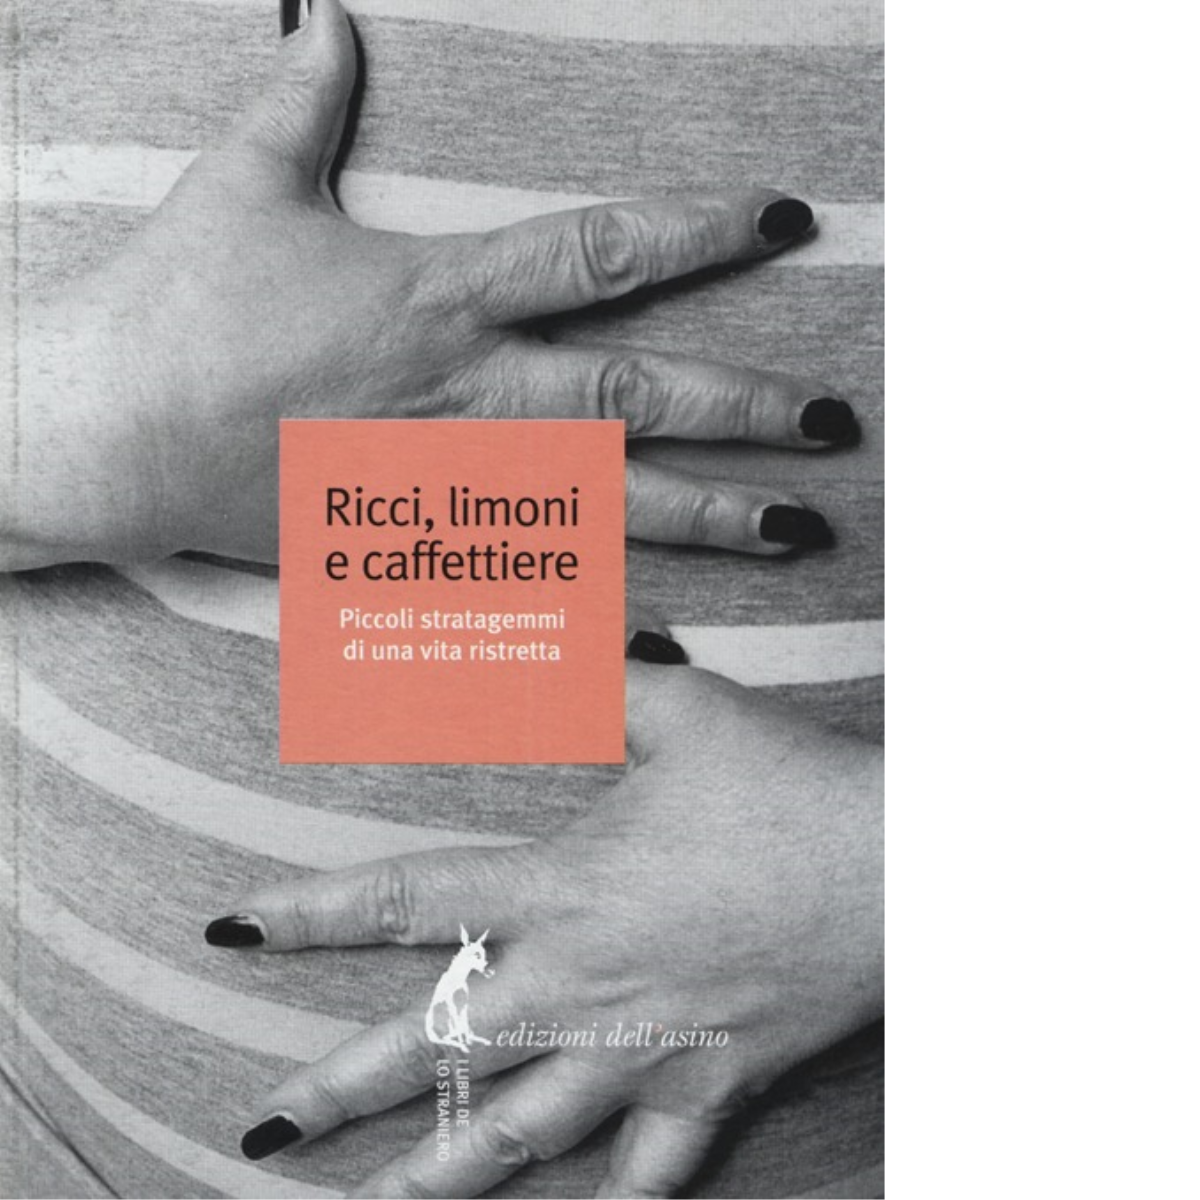 Ricci, limoni e caffettiere di Cecchini C. L. (cur.) - Edizioni Dell'Asino, 2014